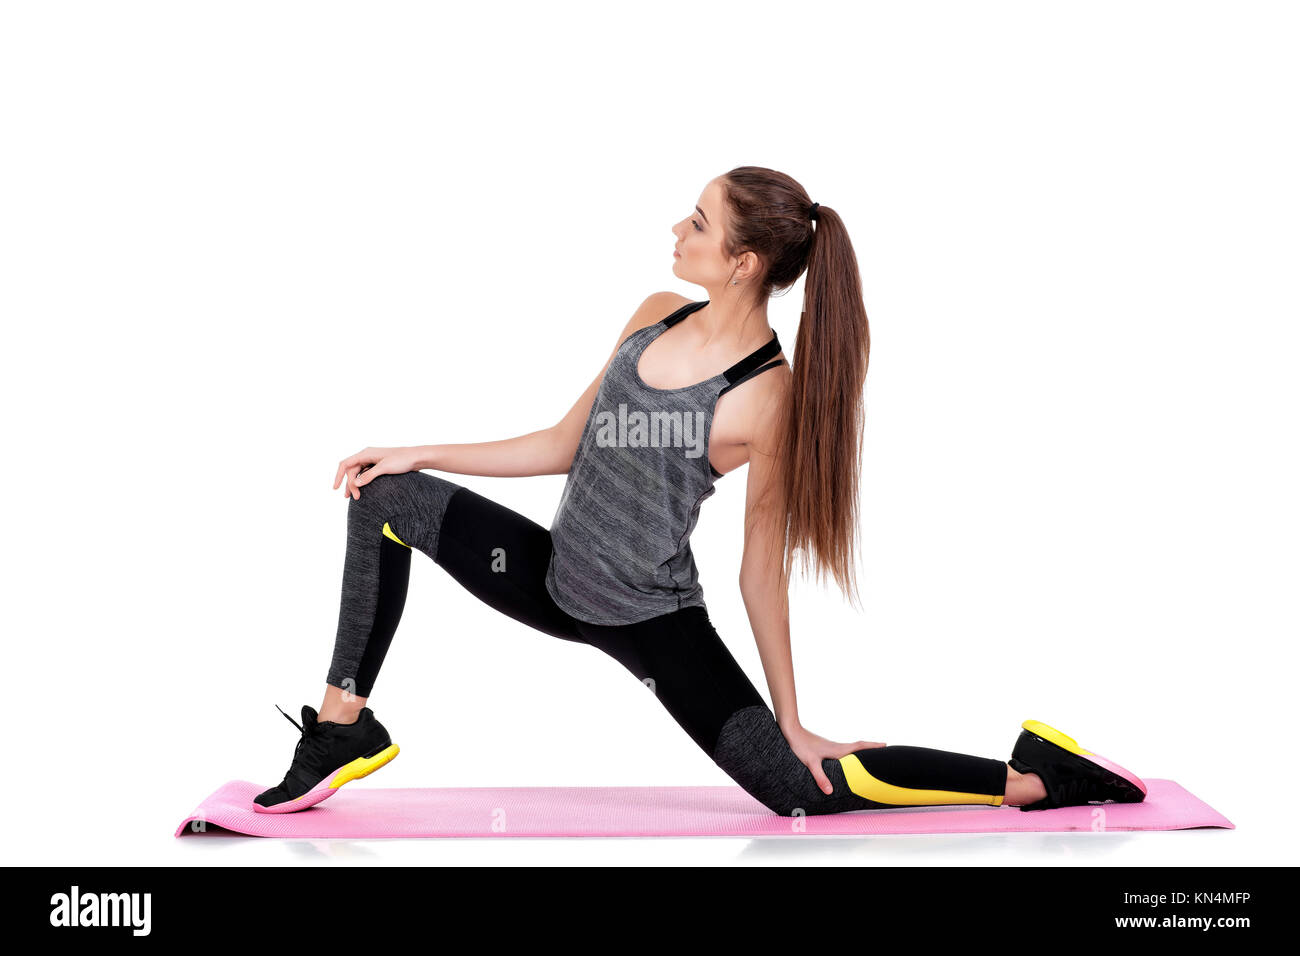 Cerca de mujer deportiva colchón de yoga plegable en el gimnasio deportivo  3452169 Foto de stock en Vecteezy